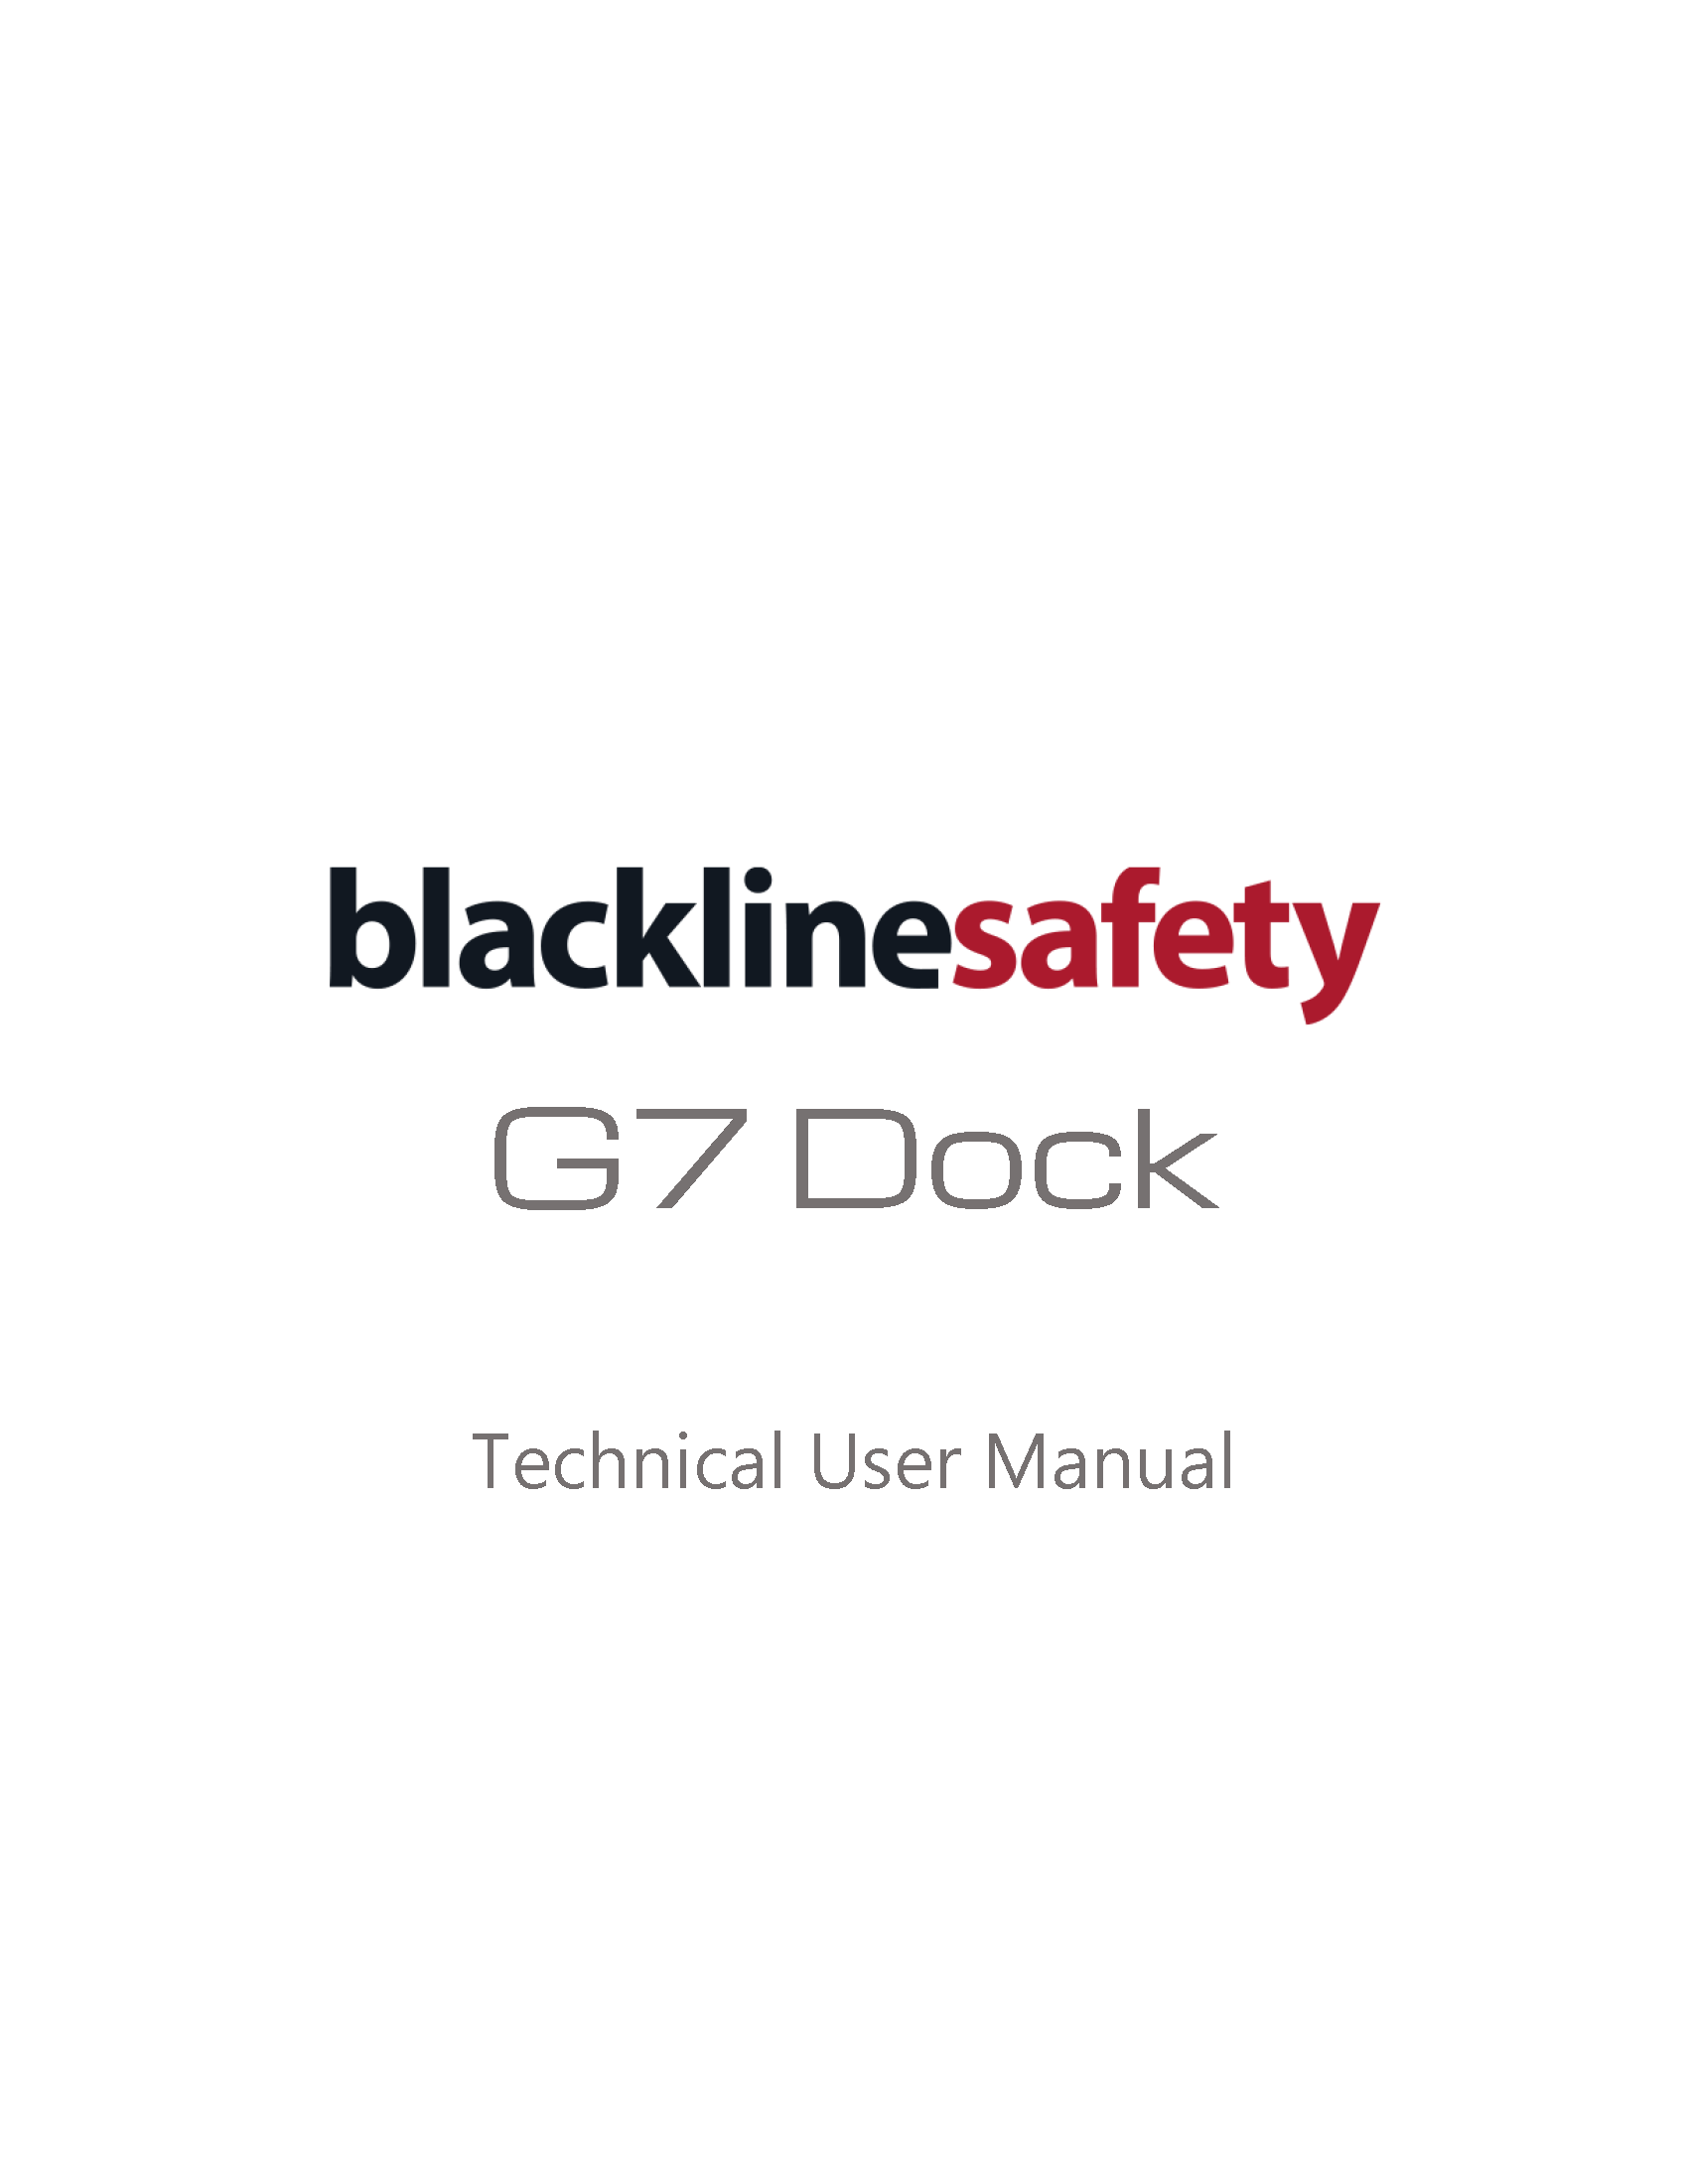 Cubierta del manual técnico del G7 Dock